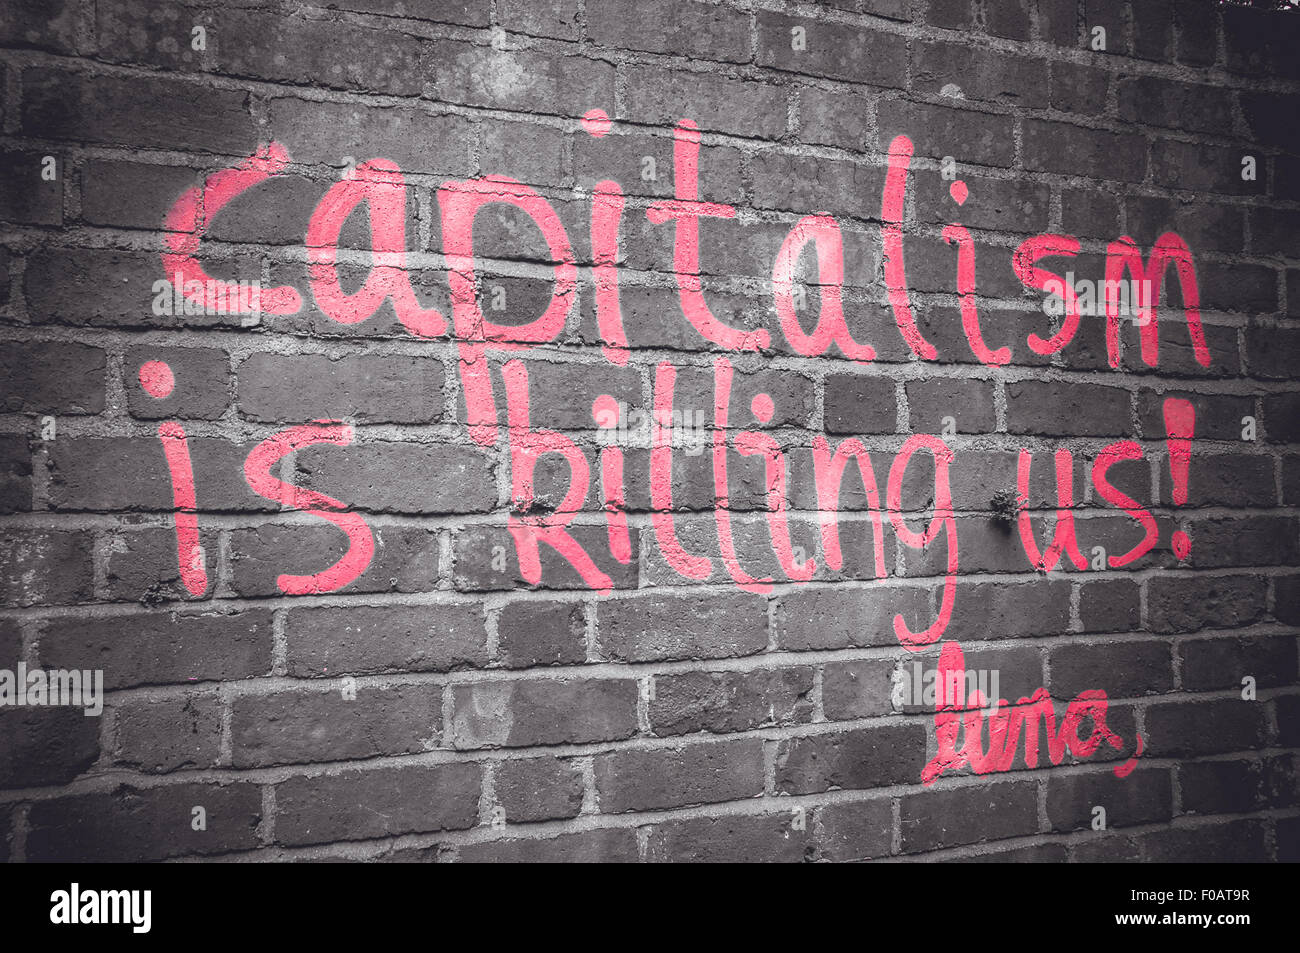 Kapitalismus tötet uns, Graffiti von Luna, Oxford, Vereinigtes Königreich Stockfoto